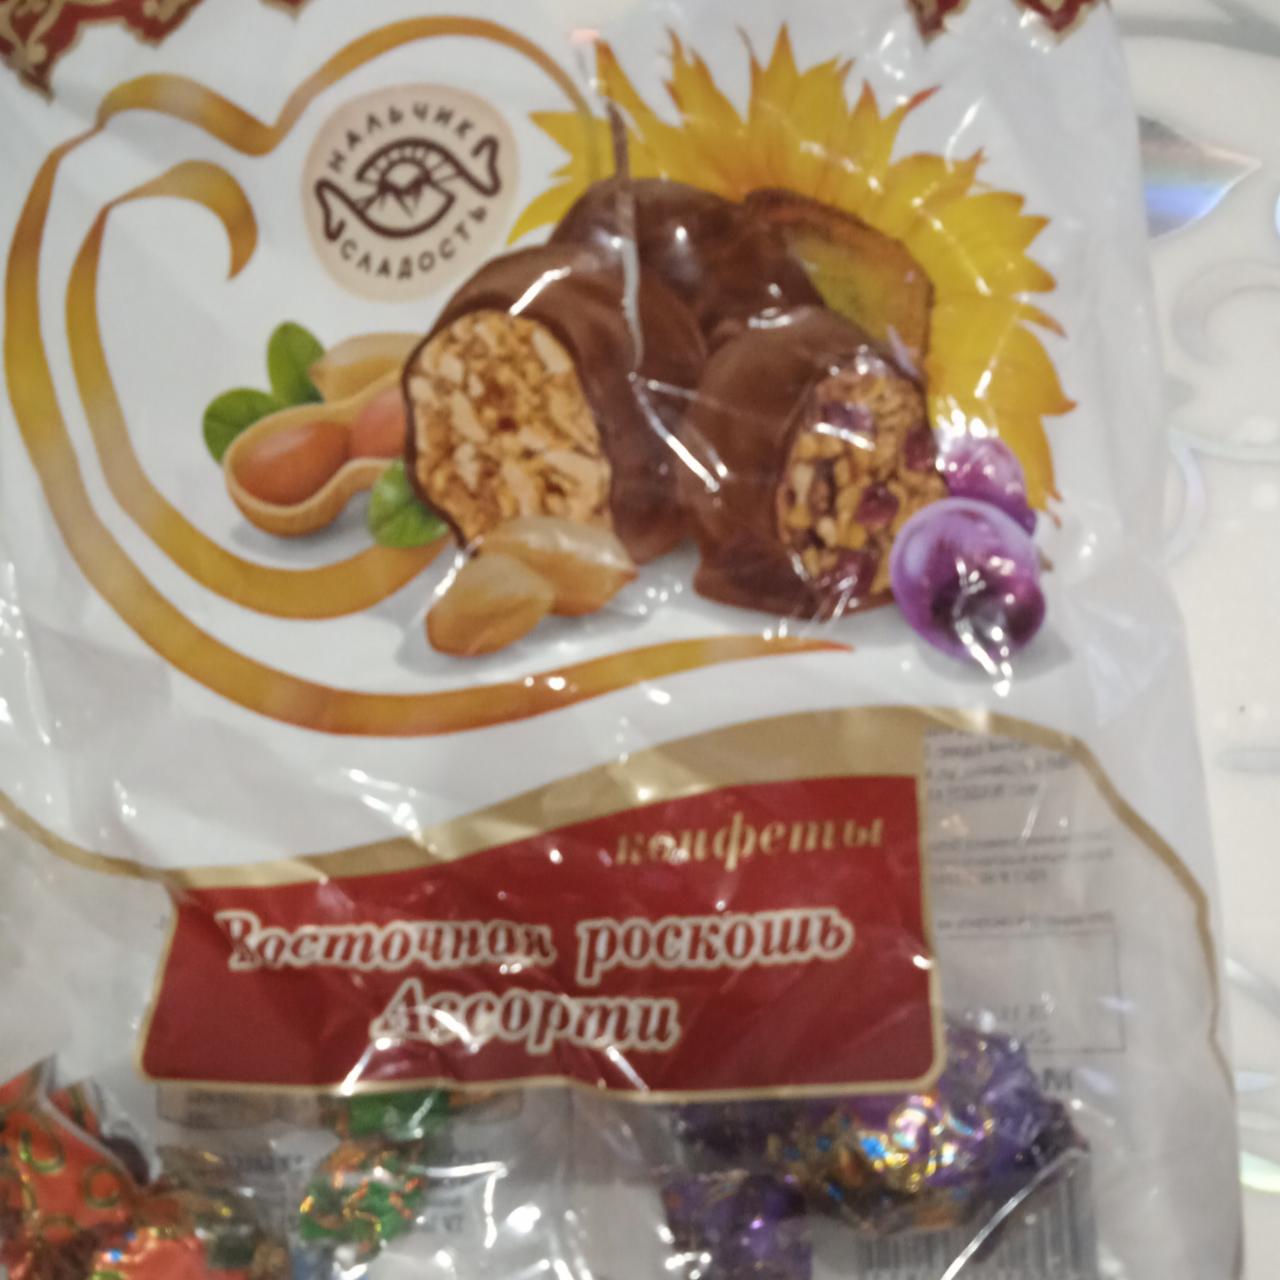 Фото - конфеты восточная роскошь ассорти Нальчик сладость